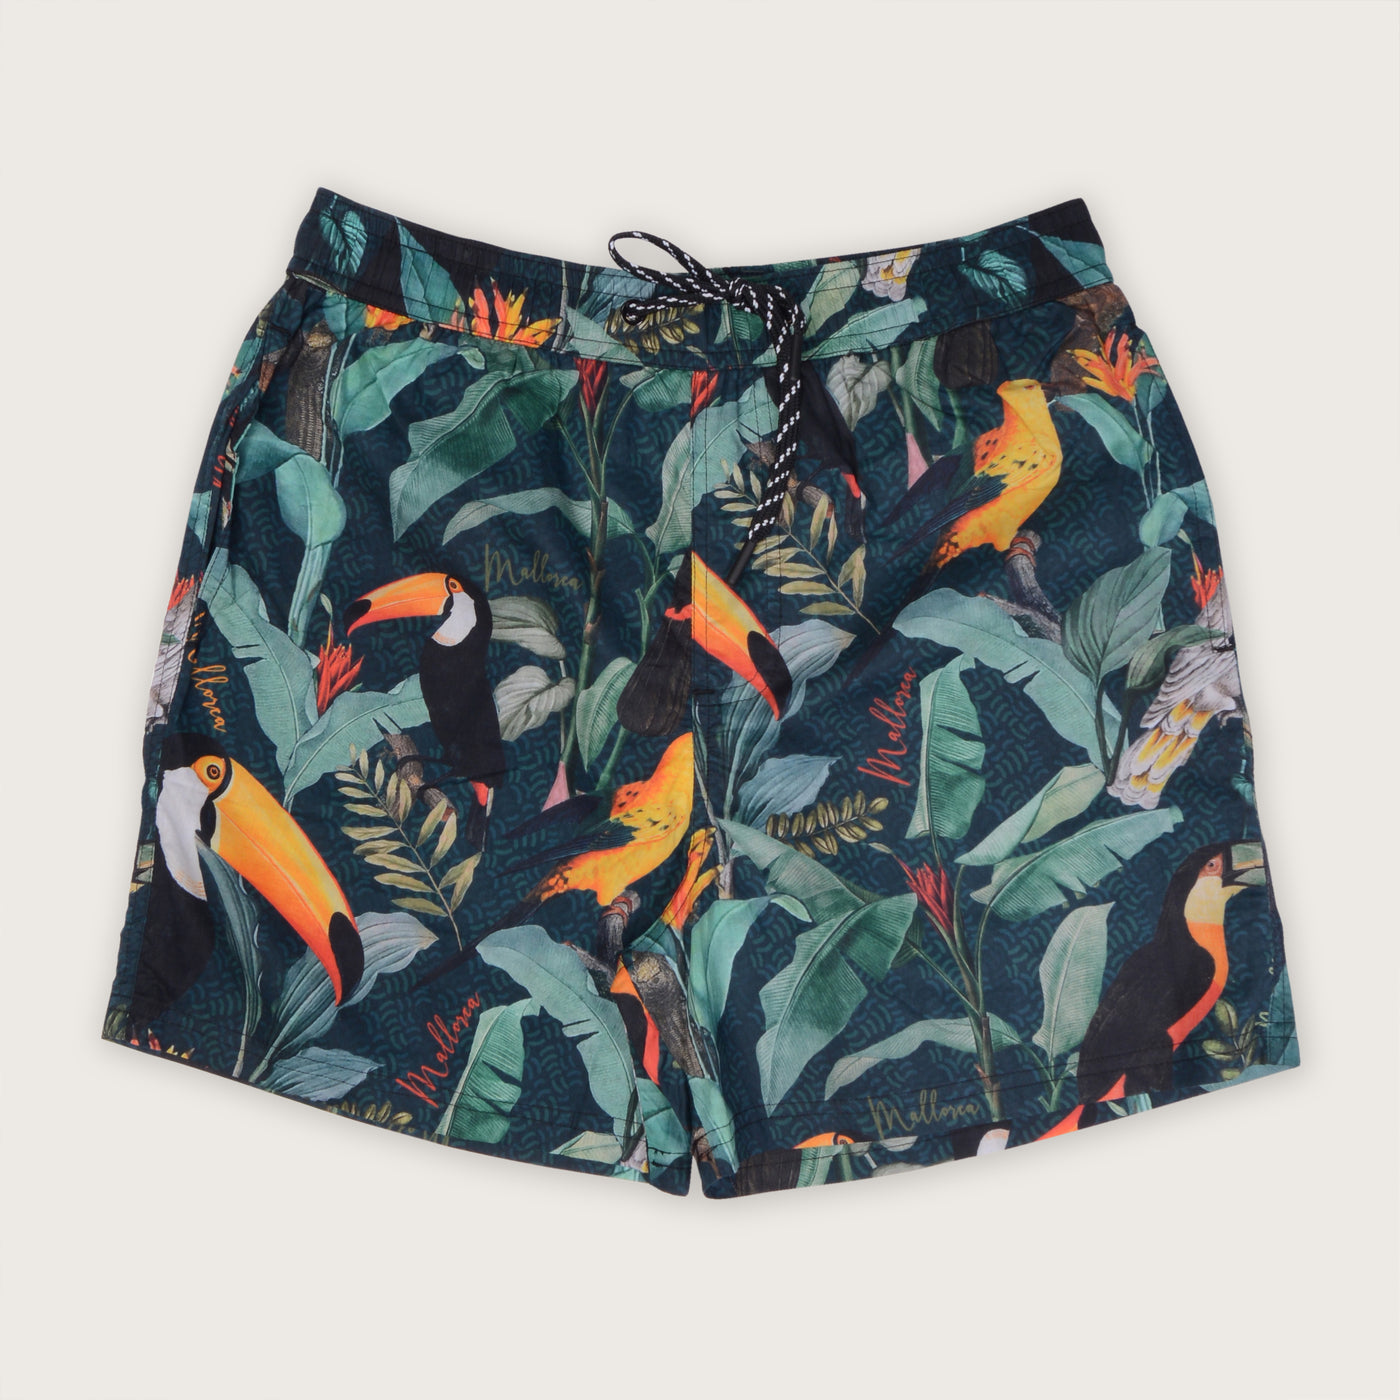 Buy now take me to macaw swim shorts